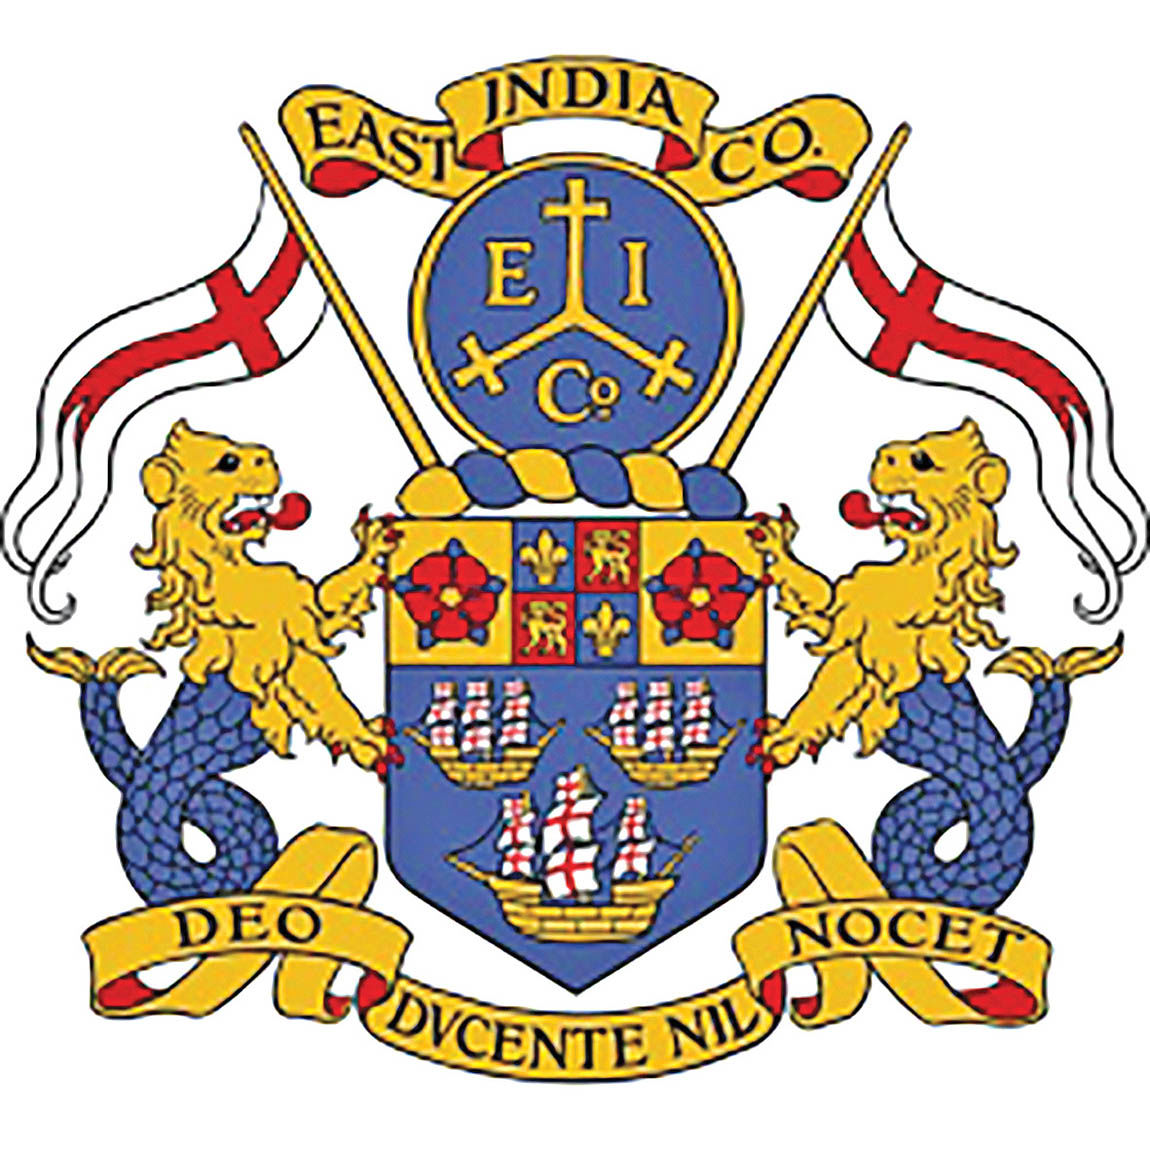 کمپانی هند شرقی انگلستان در دوره زندیه